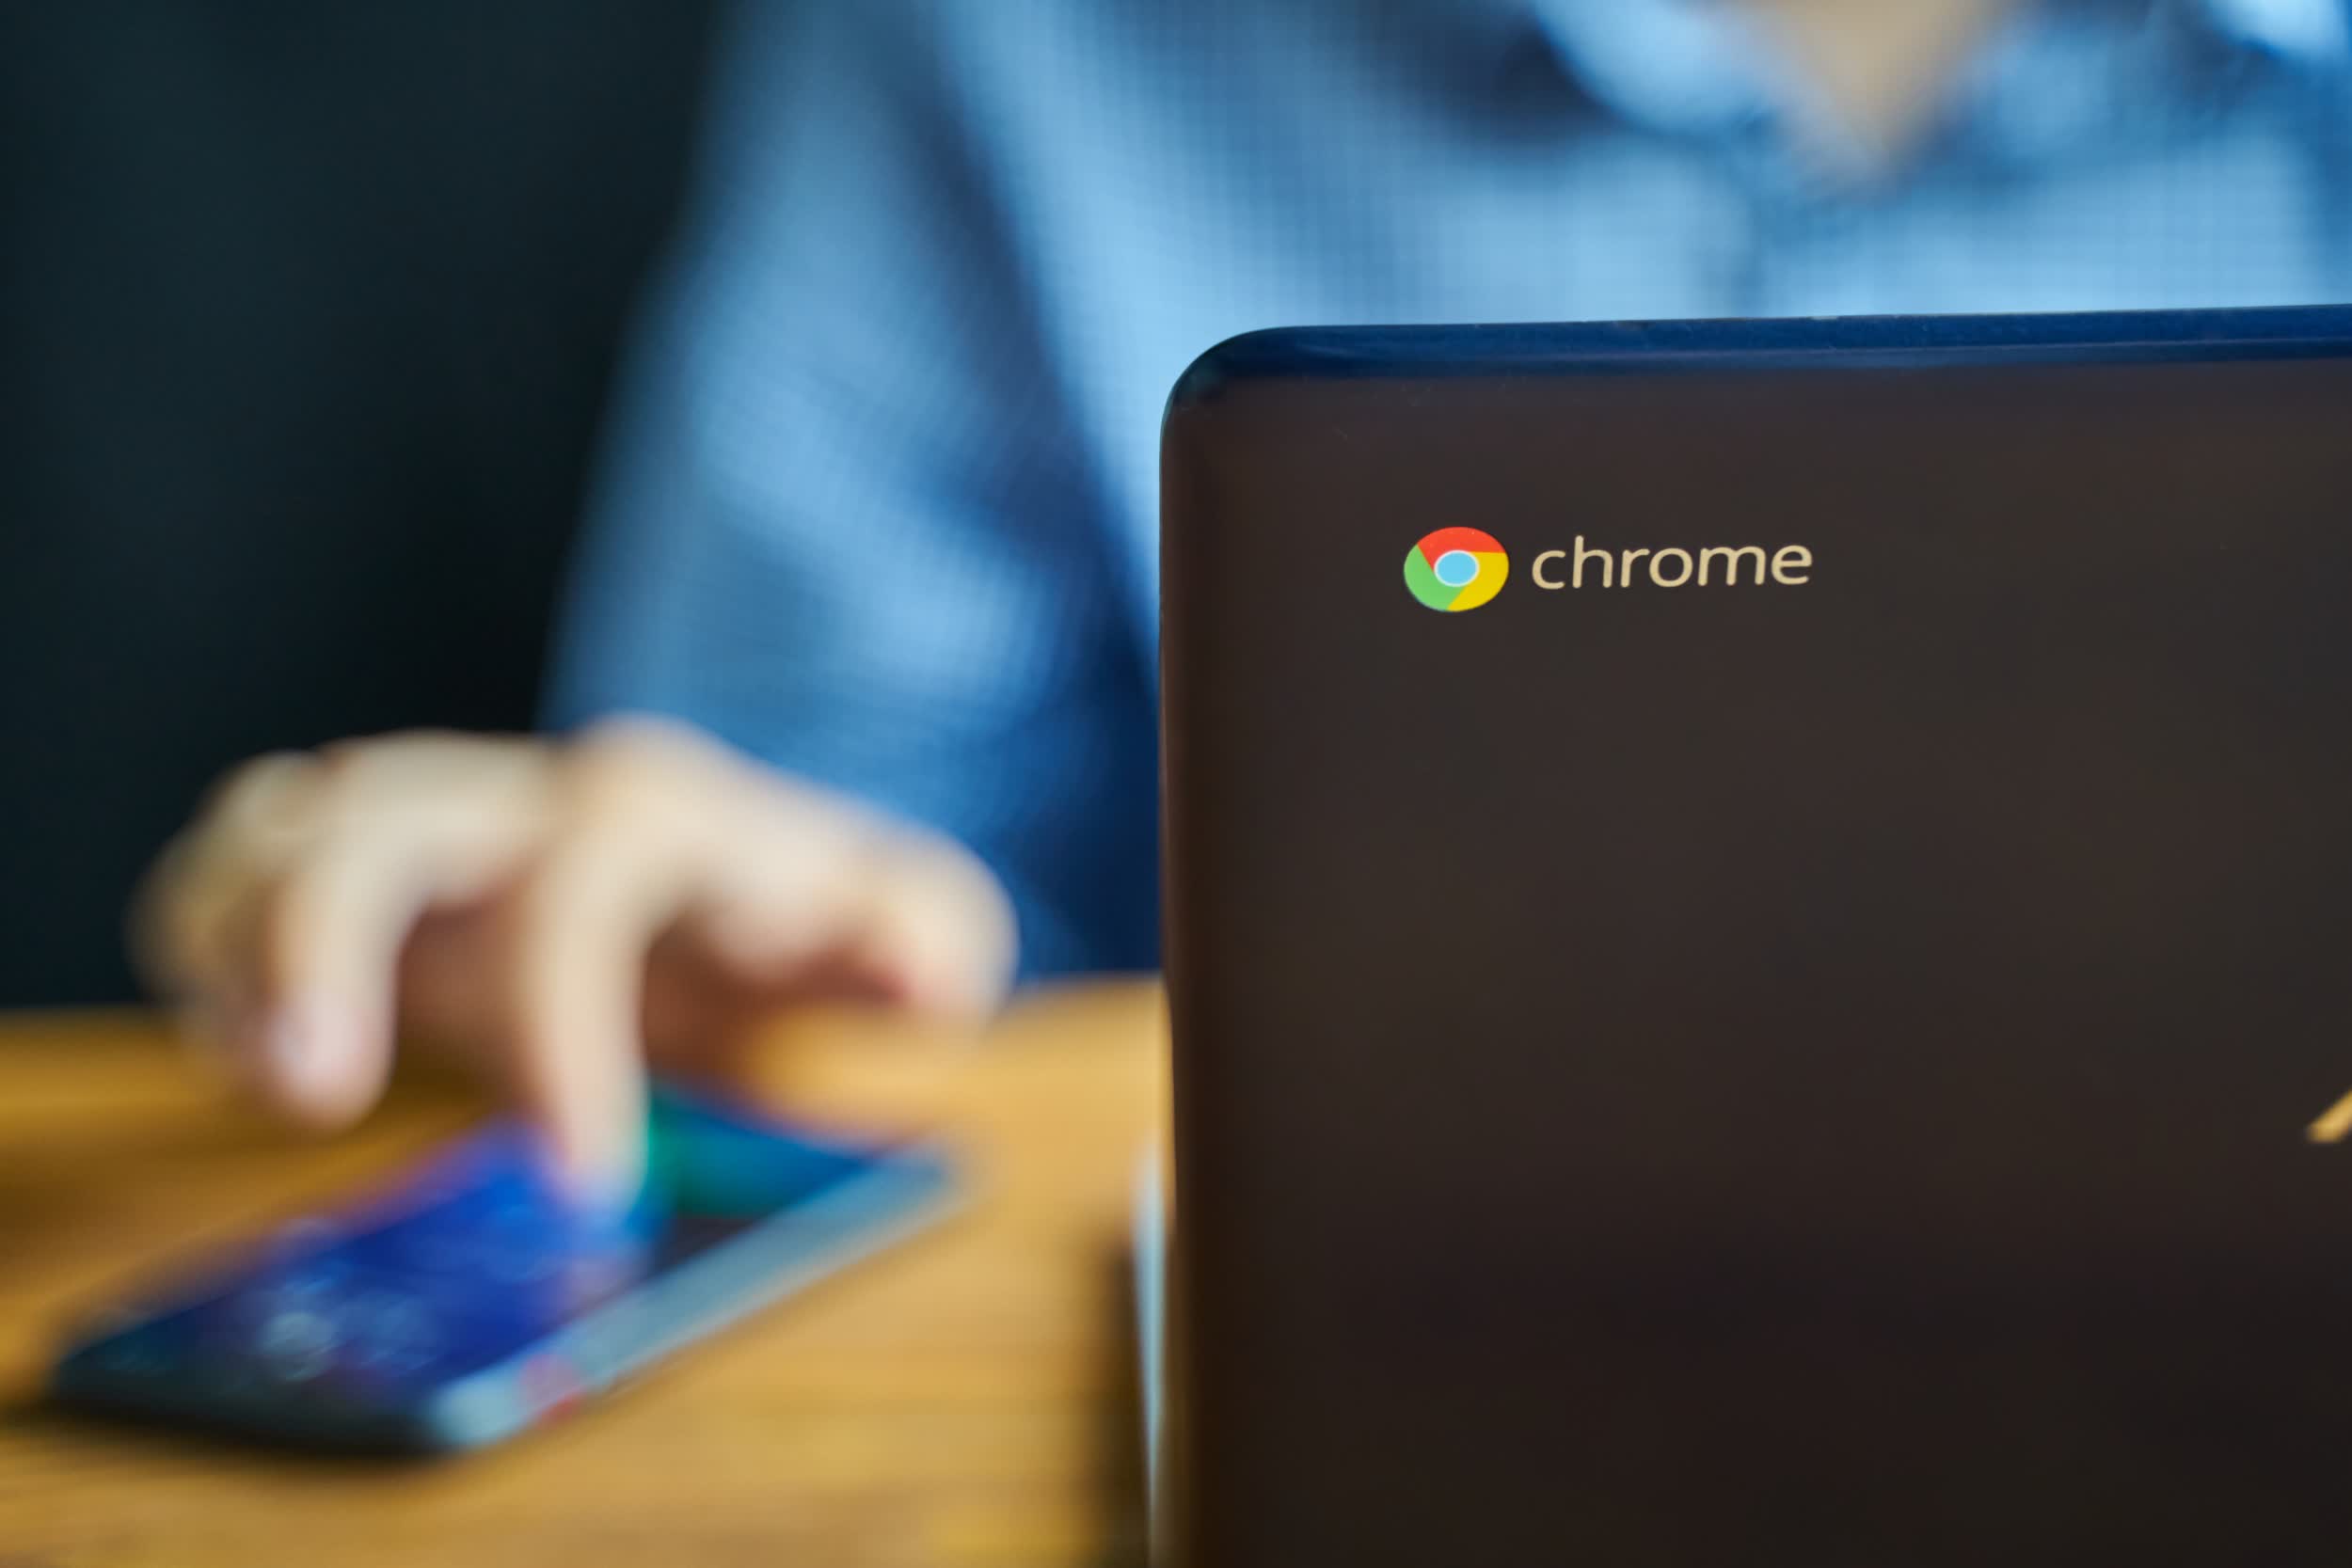  Chrome OS Accounts